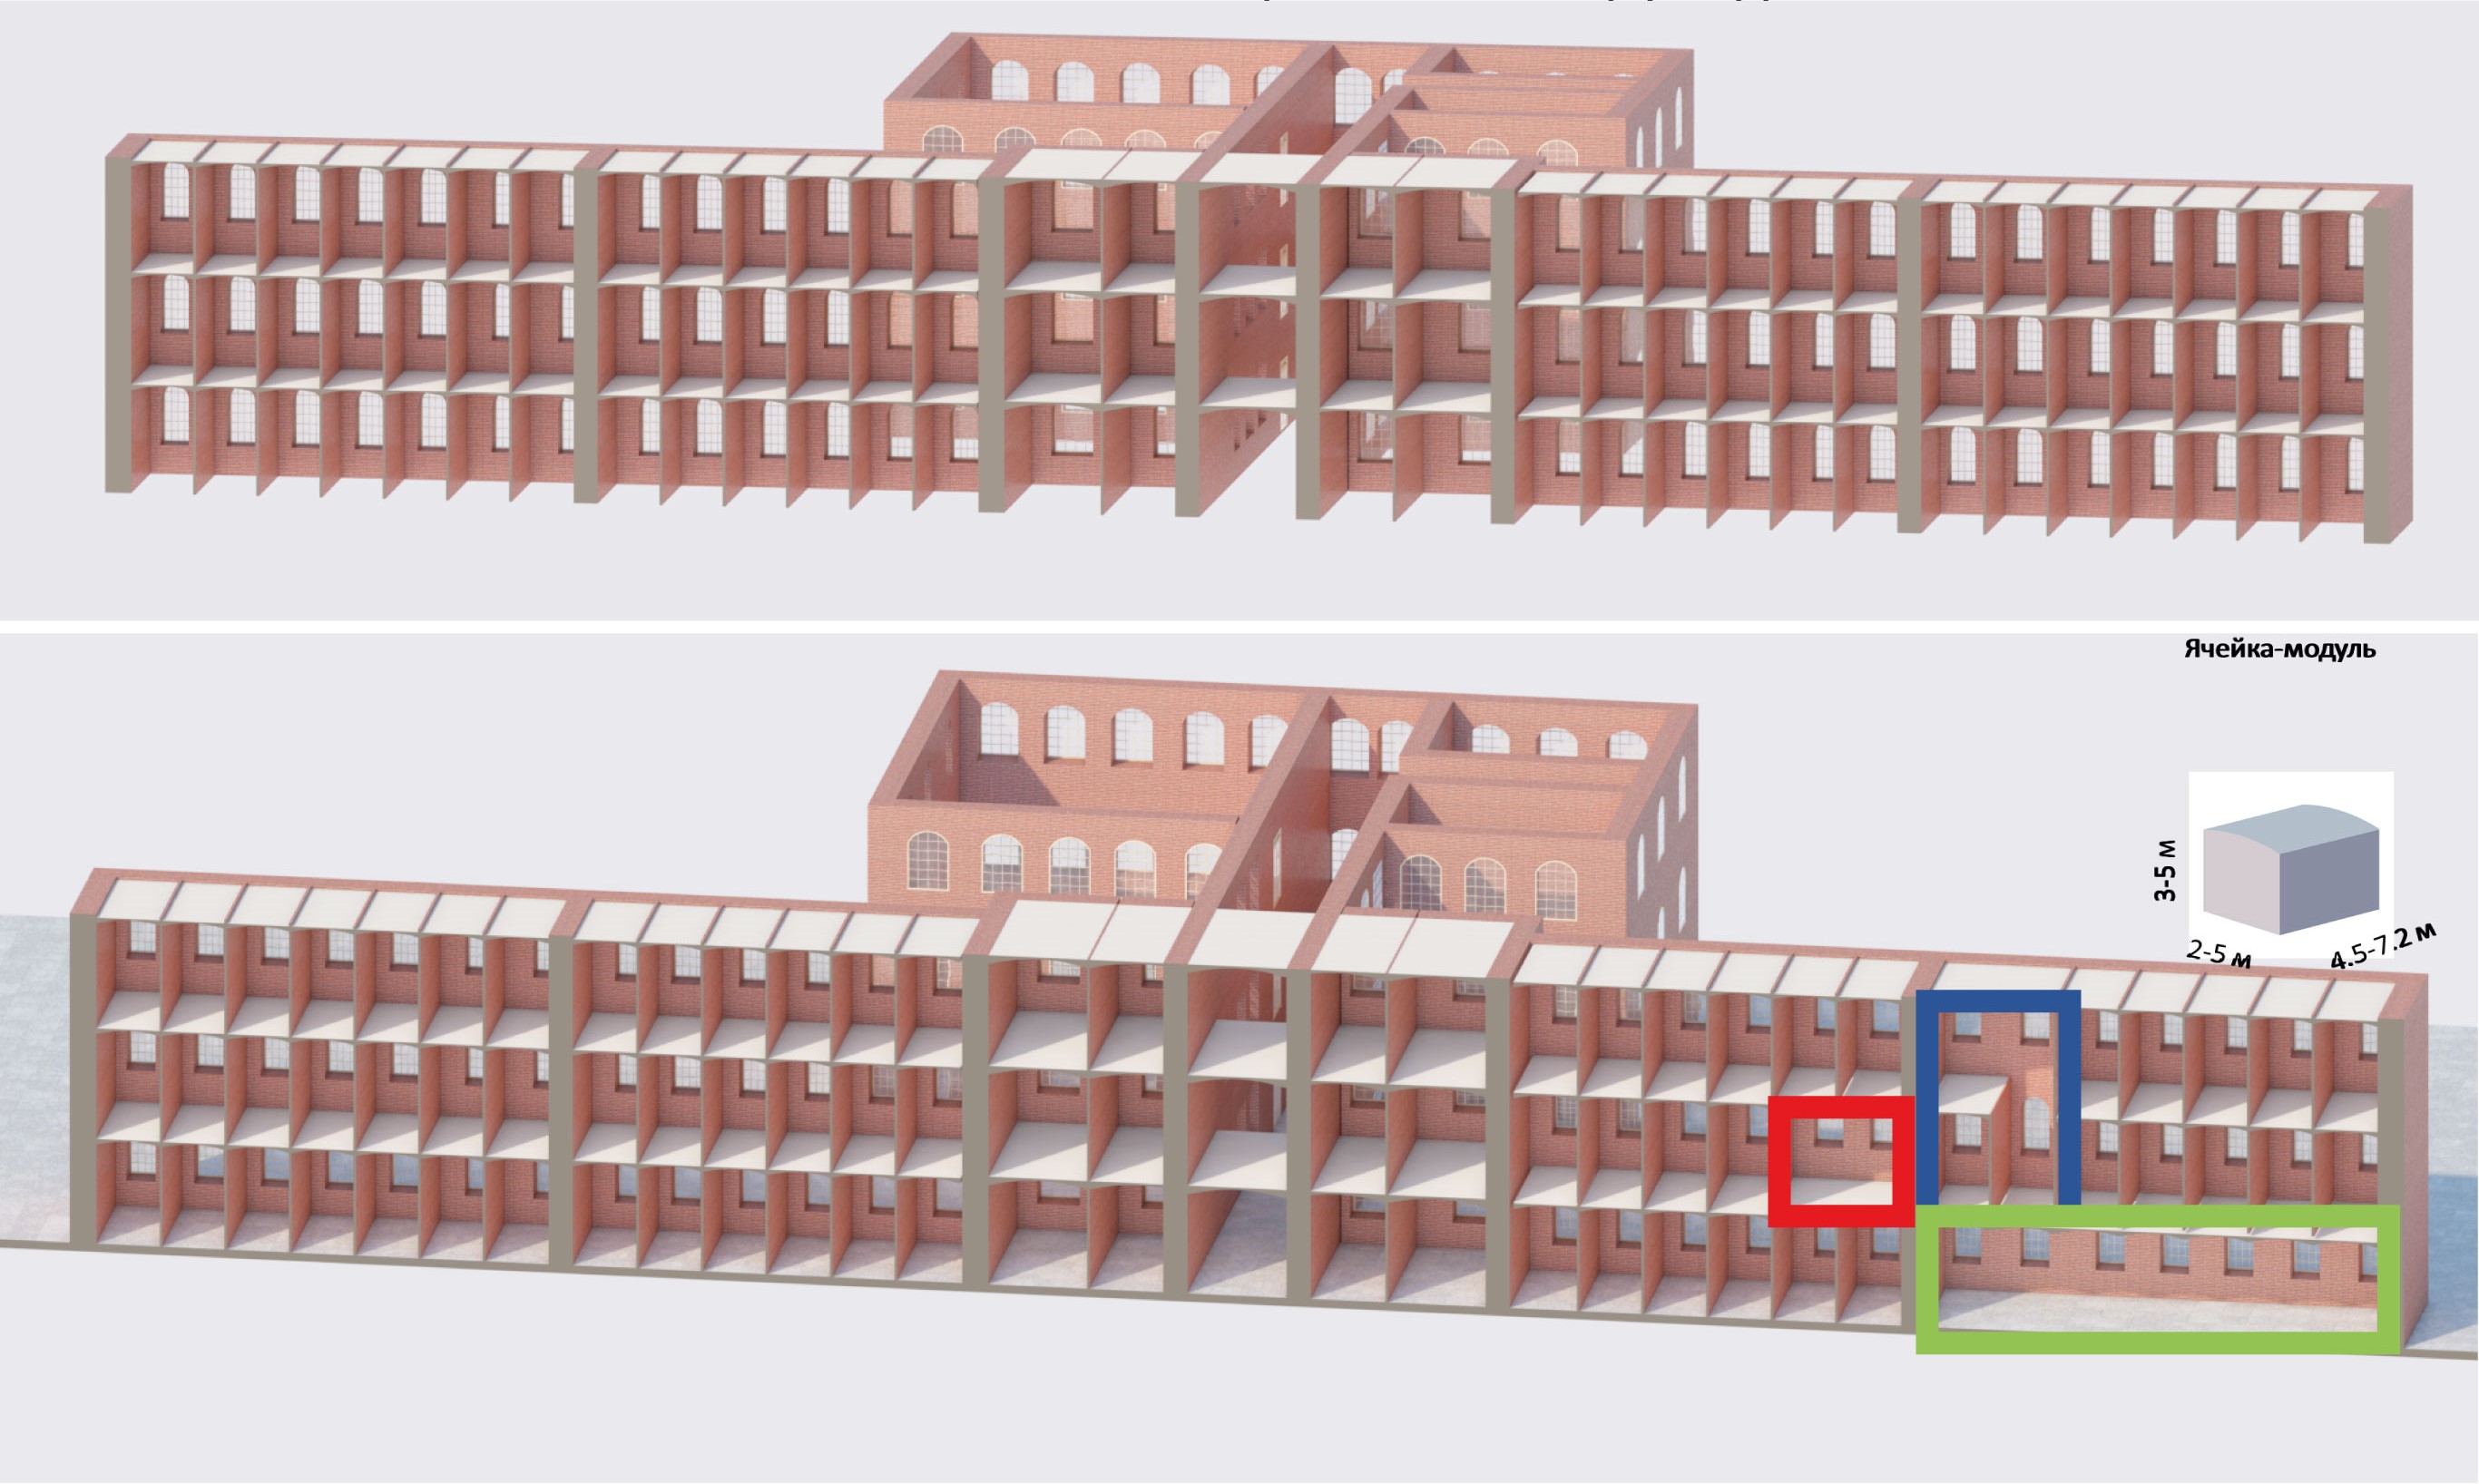 Конструктивные возможности при реконструкции зданий казарм. Объединение ячеек-модулей в пределах одного или двух этажей с целью создания новых помещений